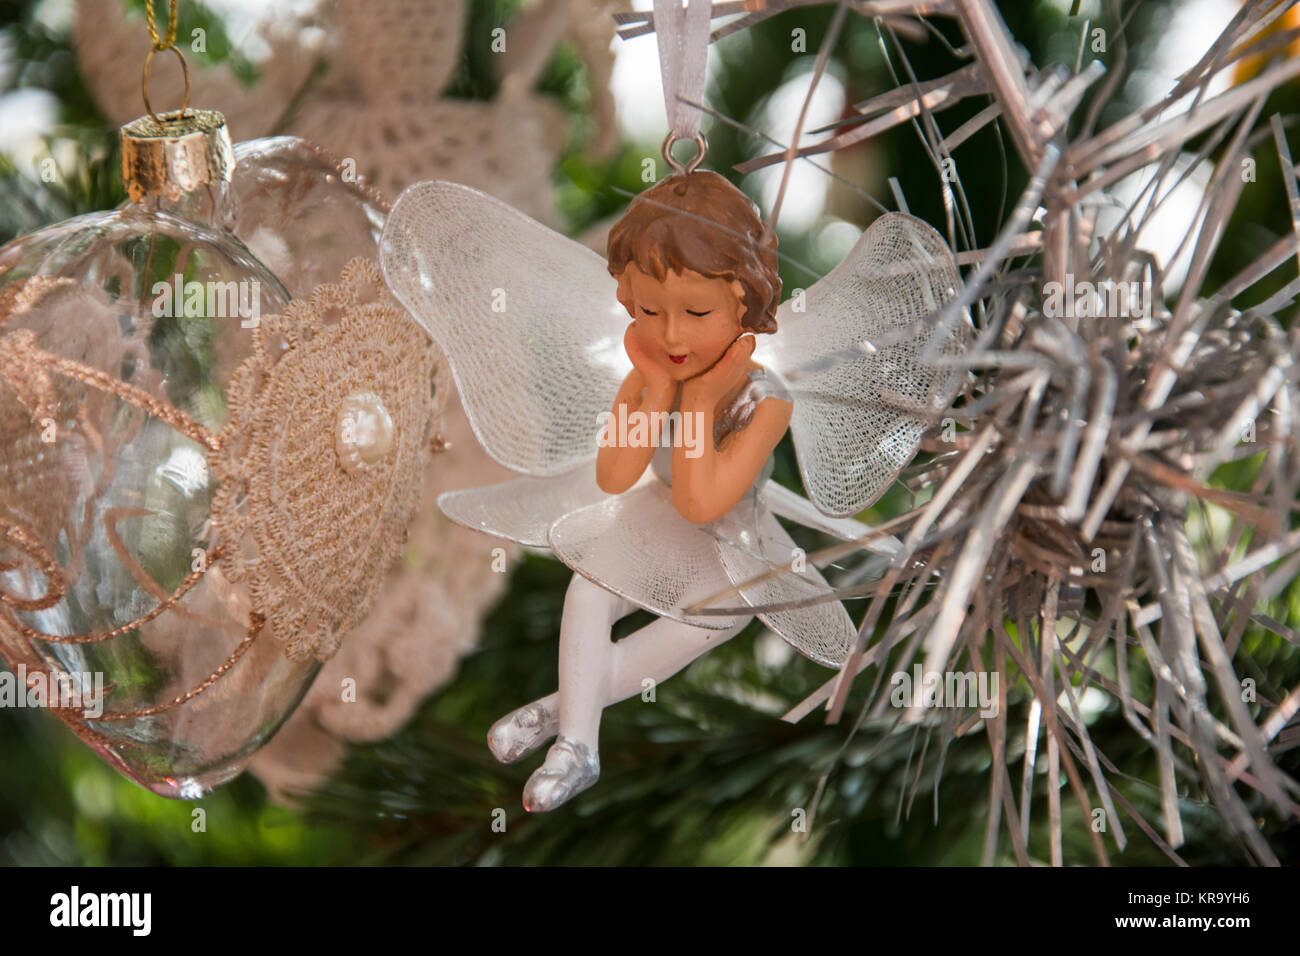 Engel ornament am Weihnachtsbaum. Schöner Urlaub Foto. Stockfoto